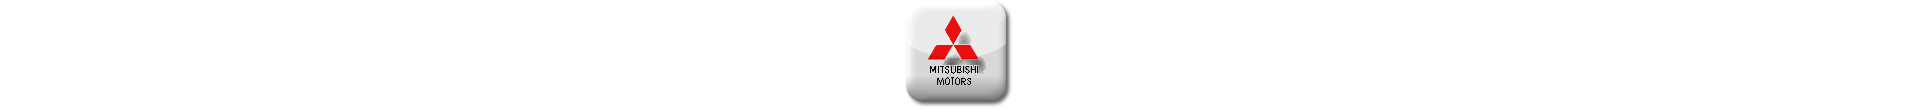 Boitier additionnel Mitsubishi Diesel Evolussem